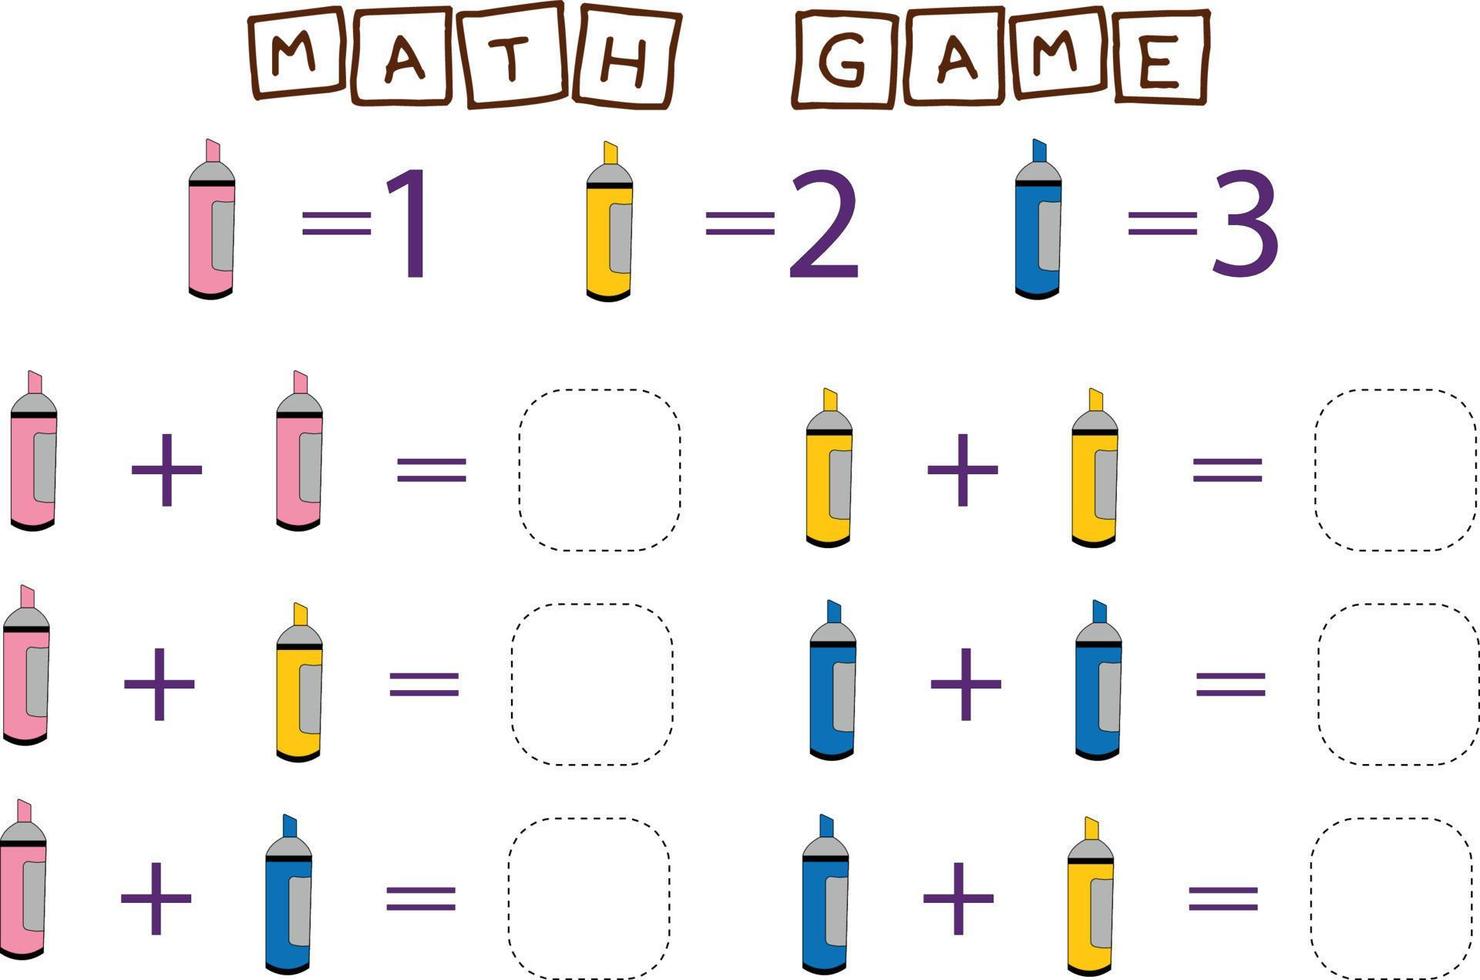 conception de vecteur de feuille de calcul, tâche pour calculer la réponse et se connecter au bon numéro. jeu de logique pour les enfants.